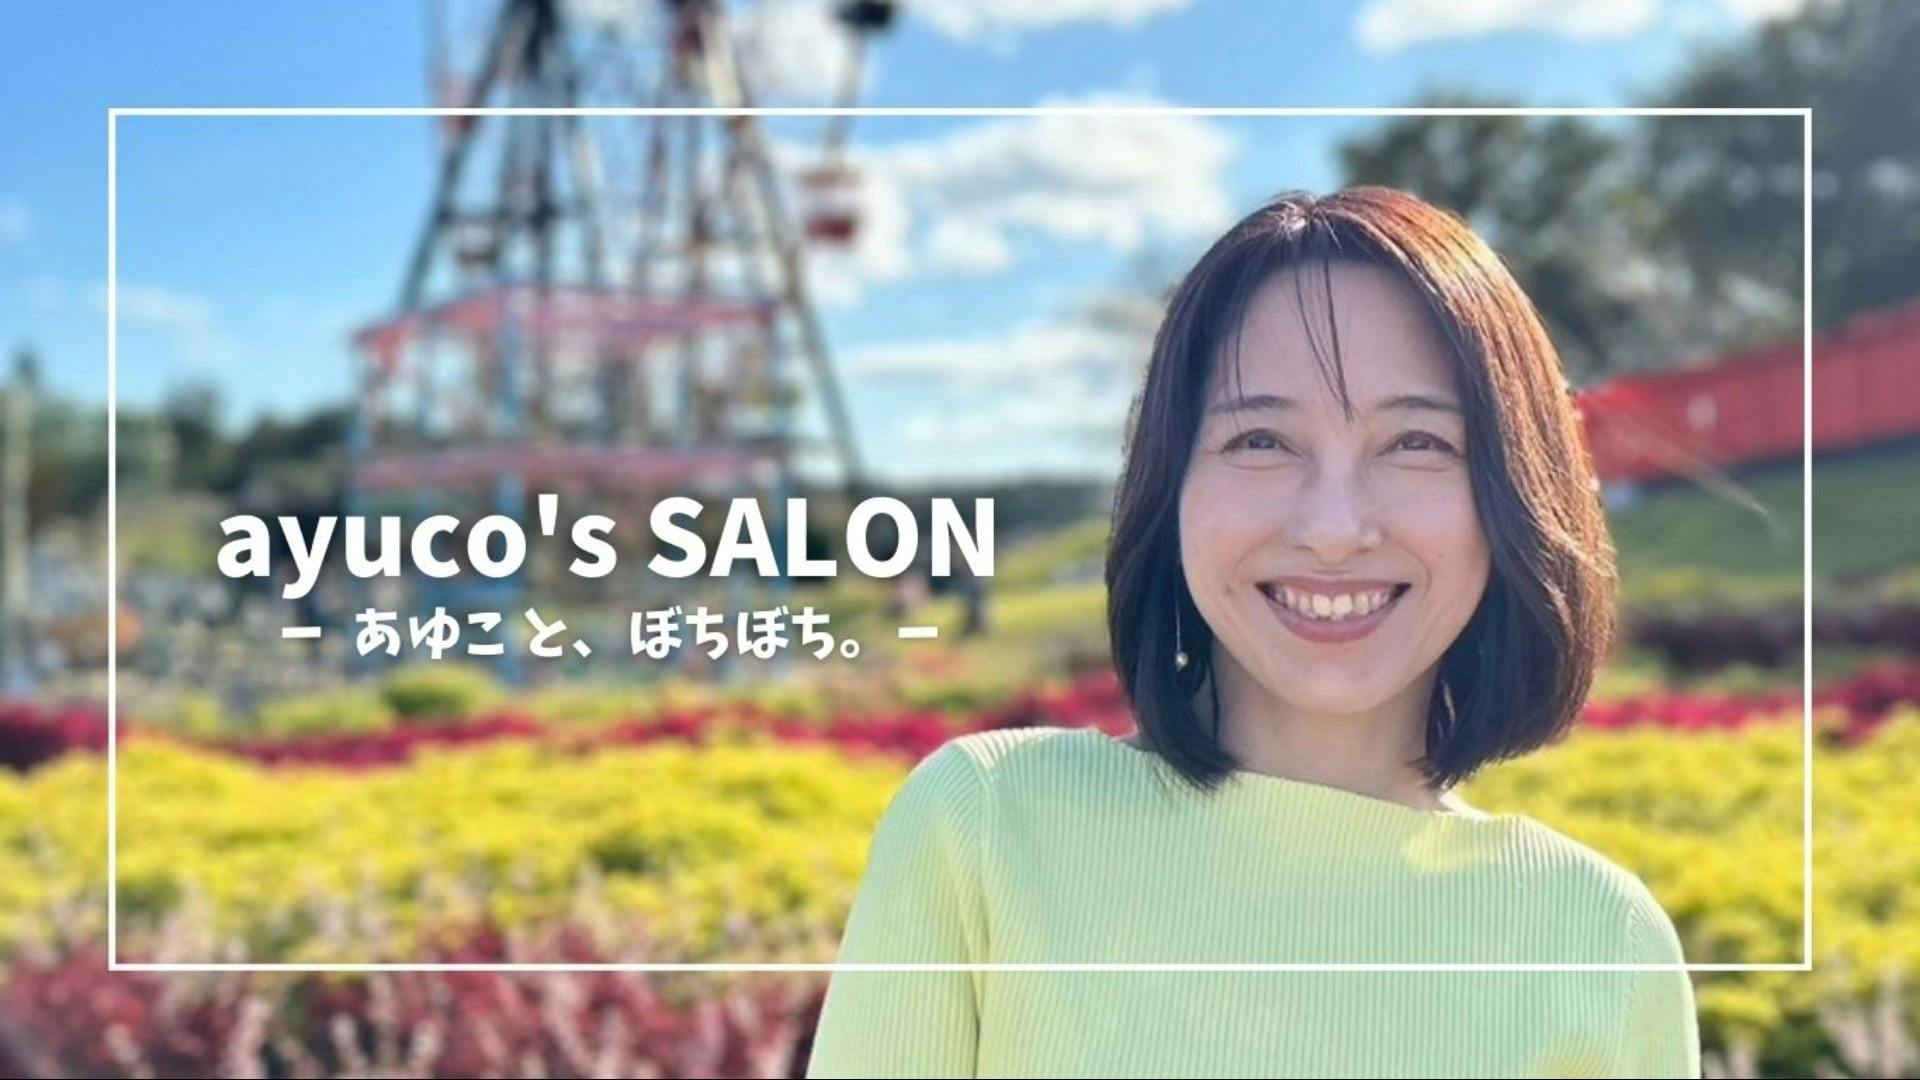 桐山あゆこ - ayuco's SALON - DMMオンラインサロン